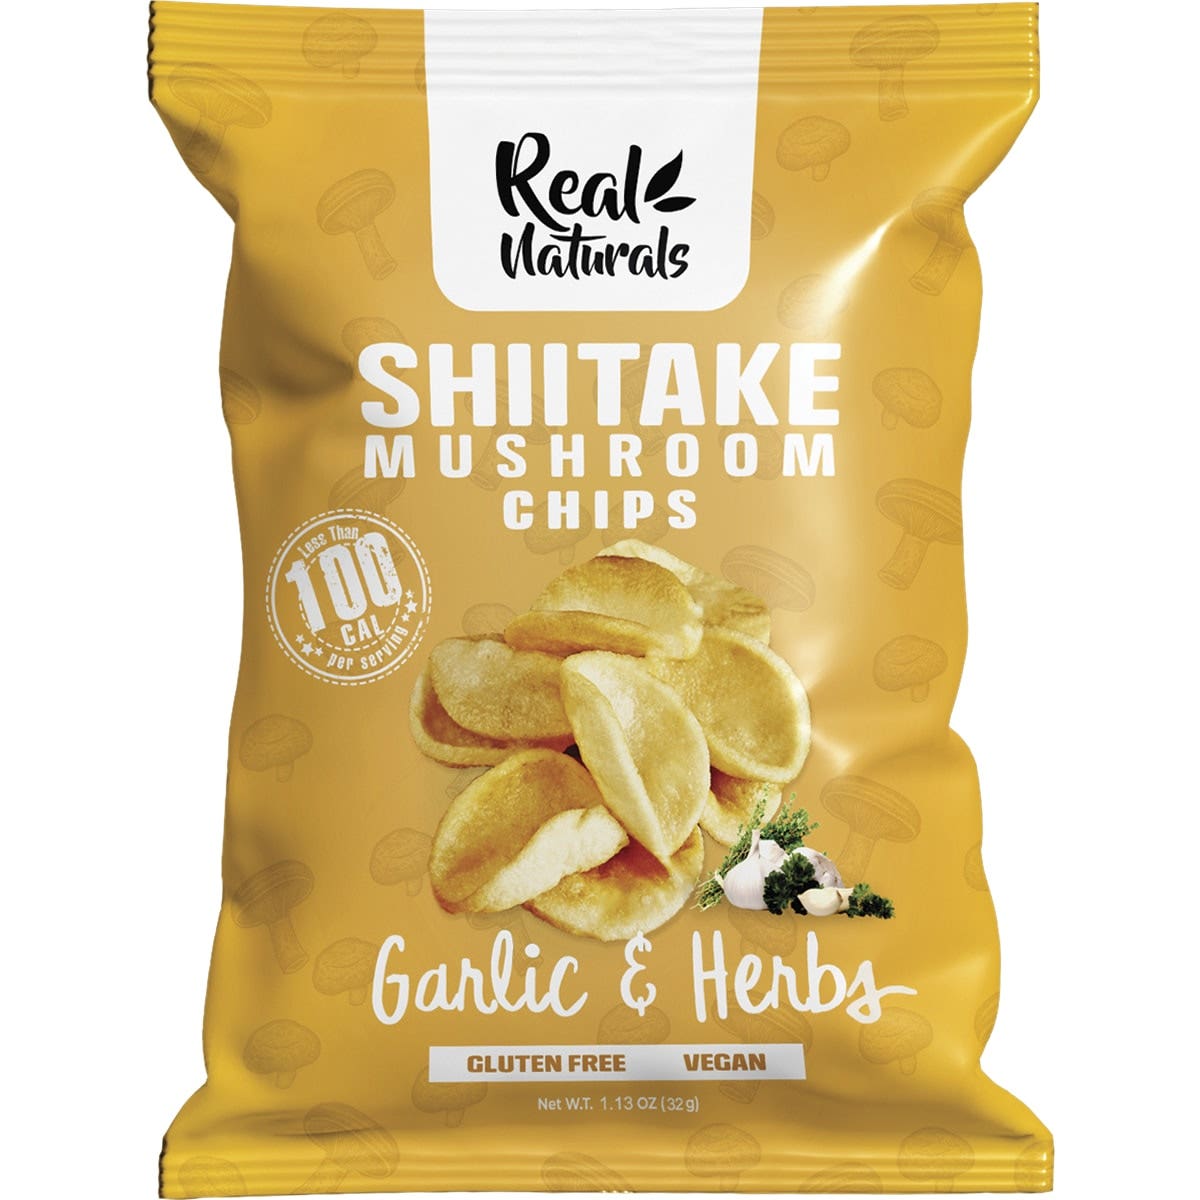 Real Naturals Shiitake Mushroom Chips Garlic & Herbs 12 x 32g